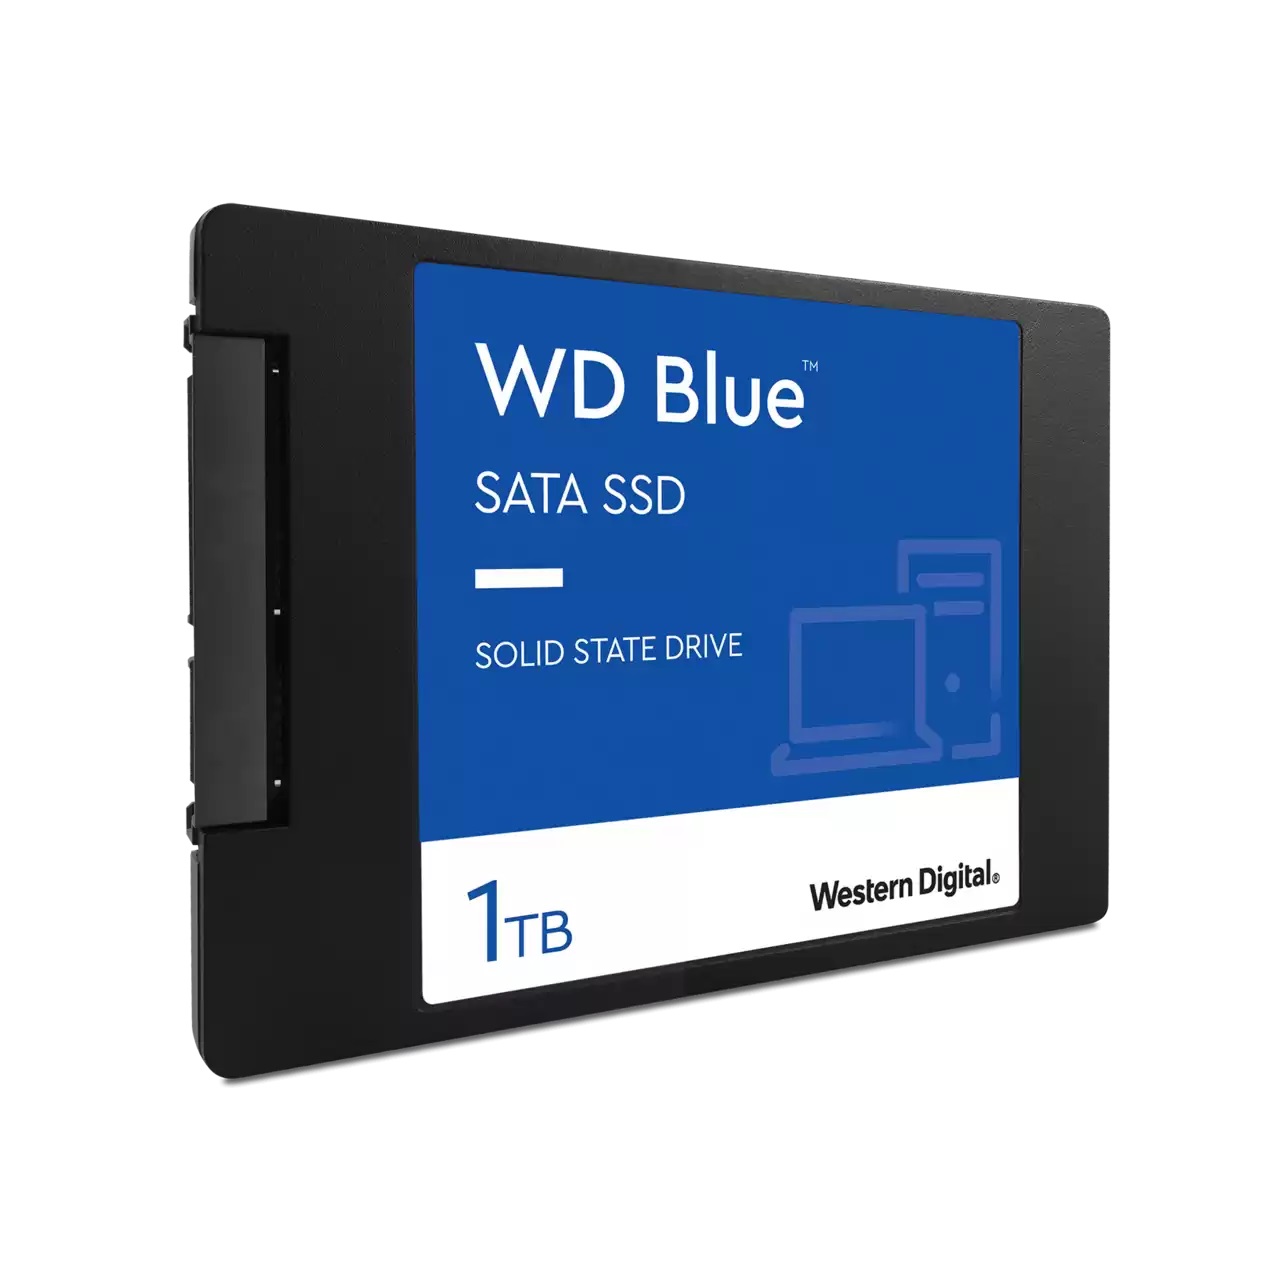 Wds100t2b0a. WD SSD Blue sa510, 250gb. 1000 ГБ 2.5" SATA накопитель WD Blue sa510. Western Digital WD Blue sa510 SATA 500 ГБ SATA wds500g3b0a. Western Digital Blue m.2 2280 sa510 500 GB.